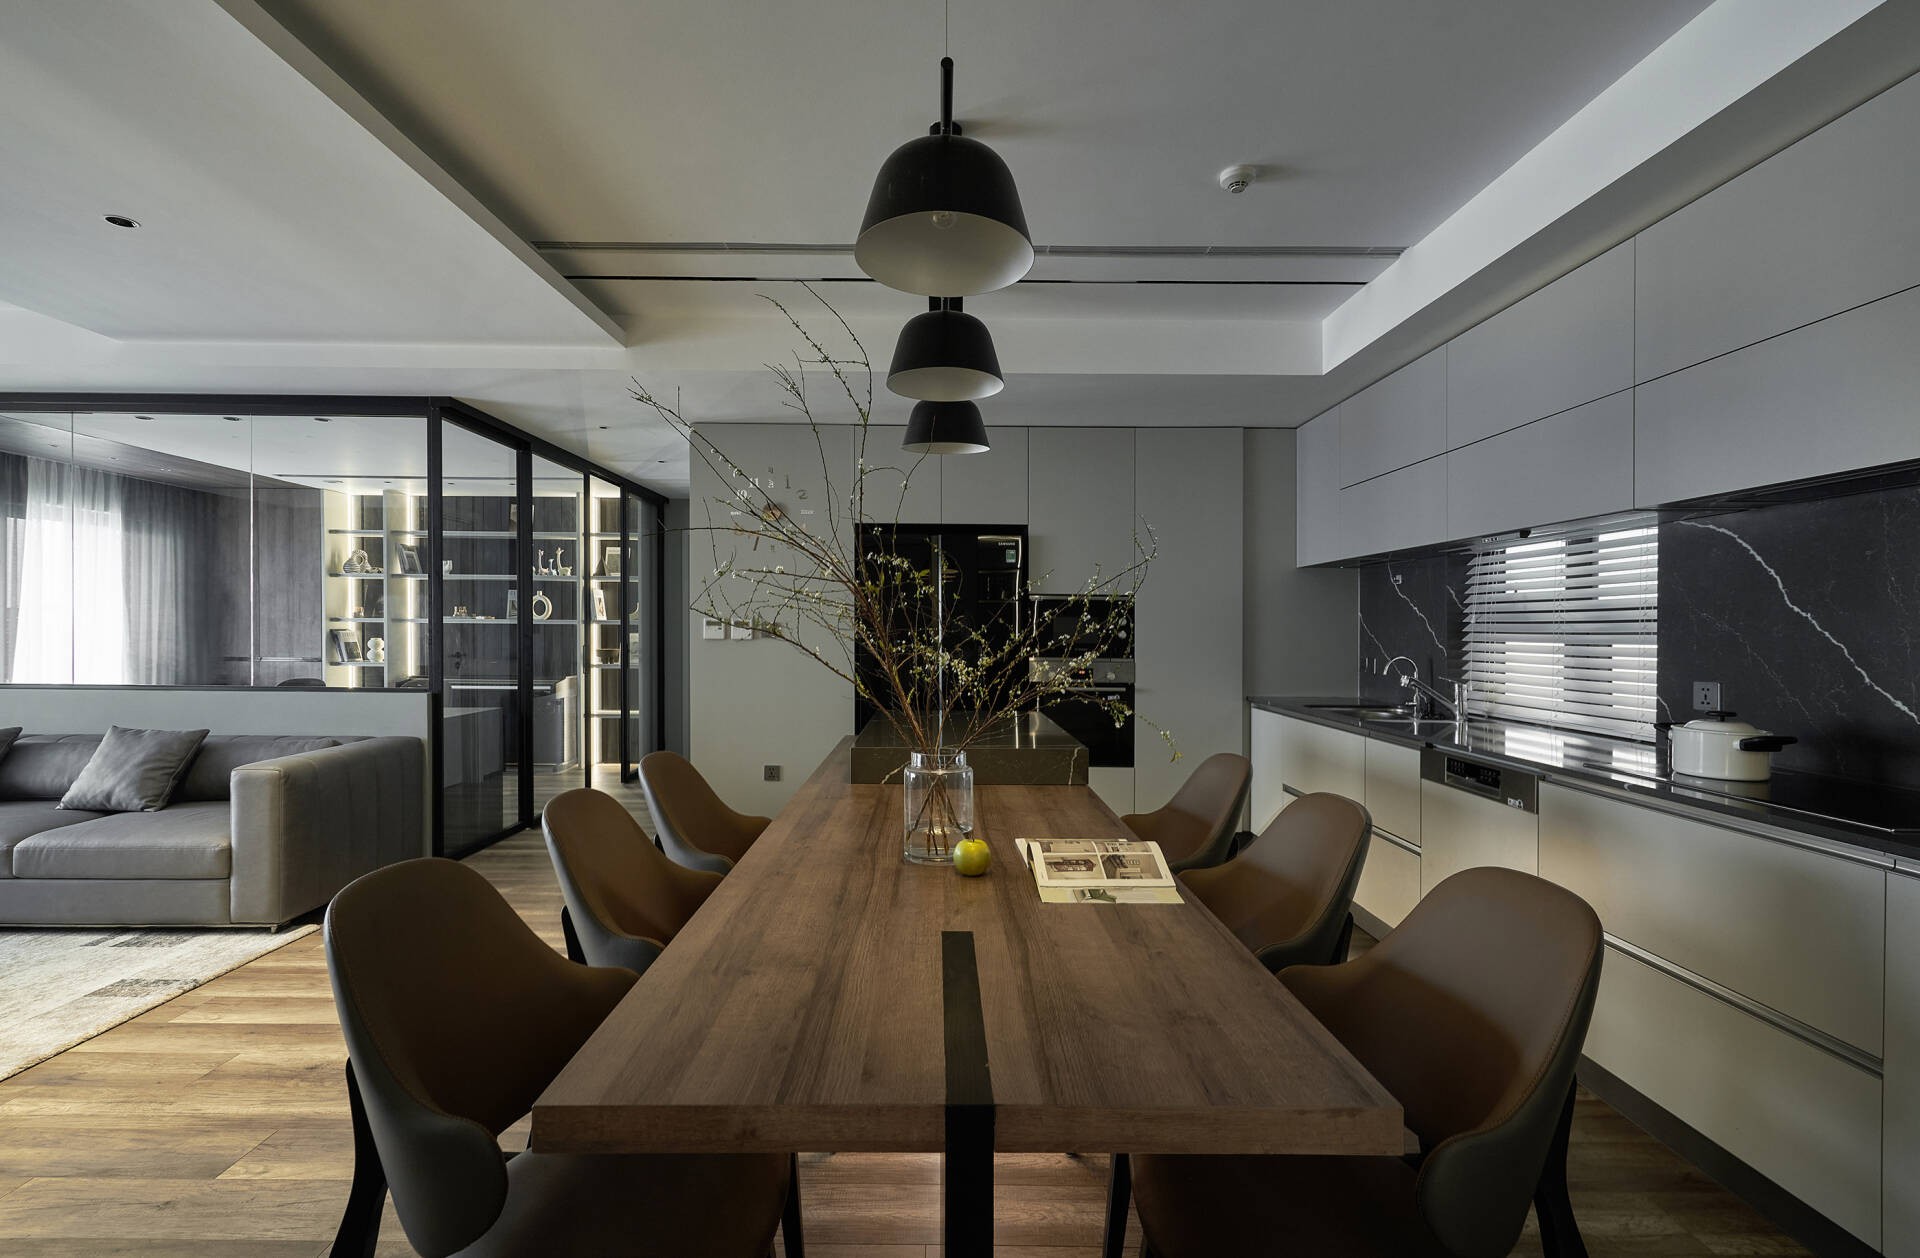 
Phòng khách và khu vực bếp - ăn có thiết kế mở, liền mạch, nhờ tấm thảm giúp ta có thể phân tách không gian bếp và khách
